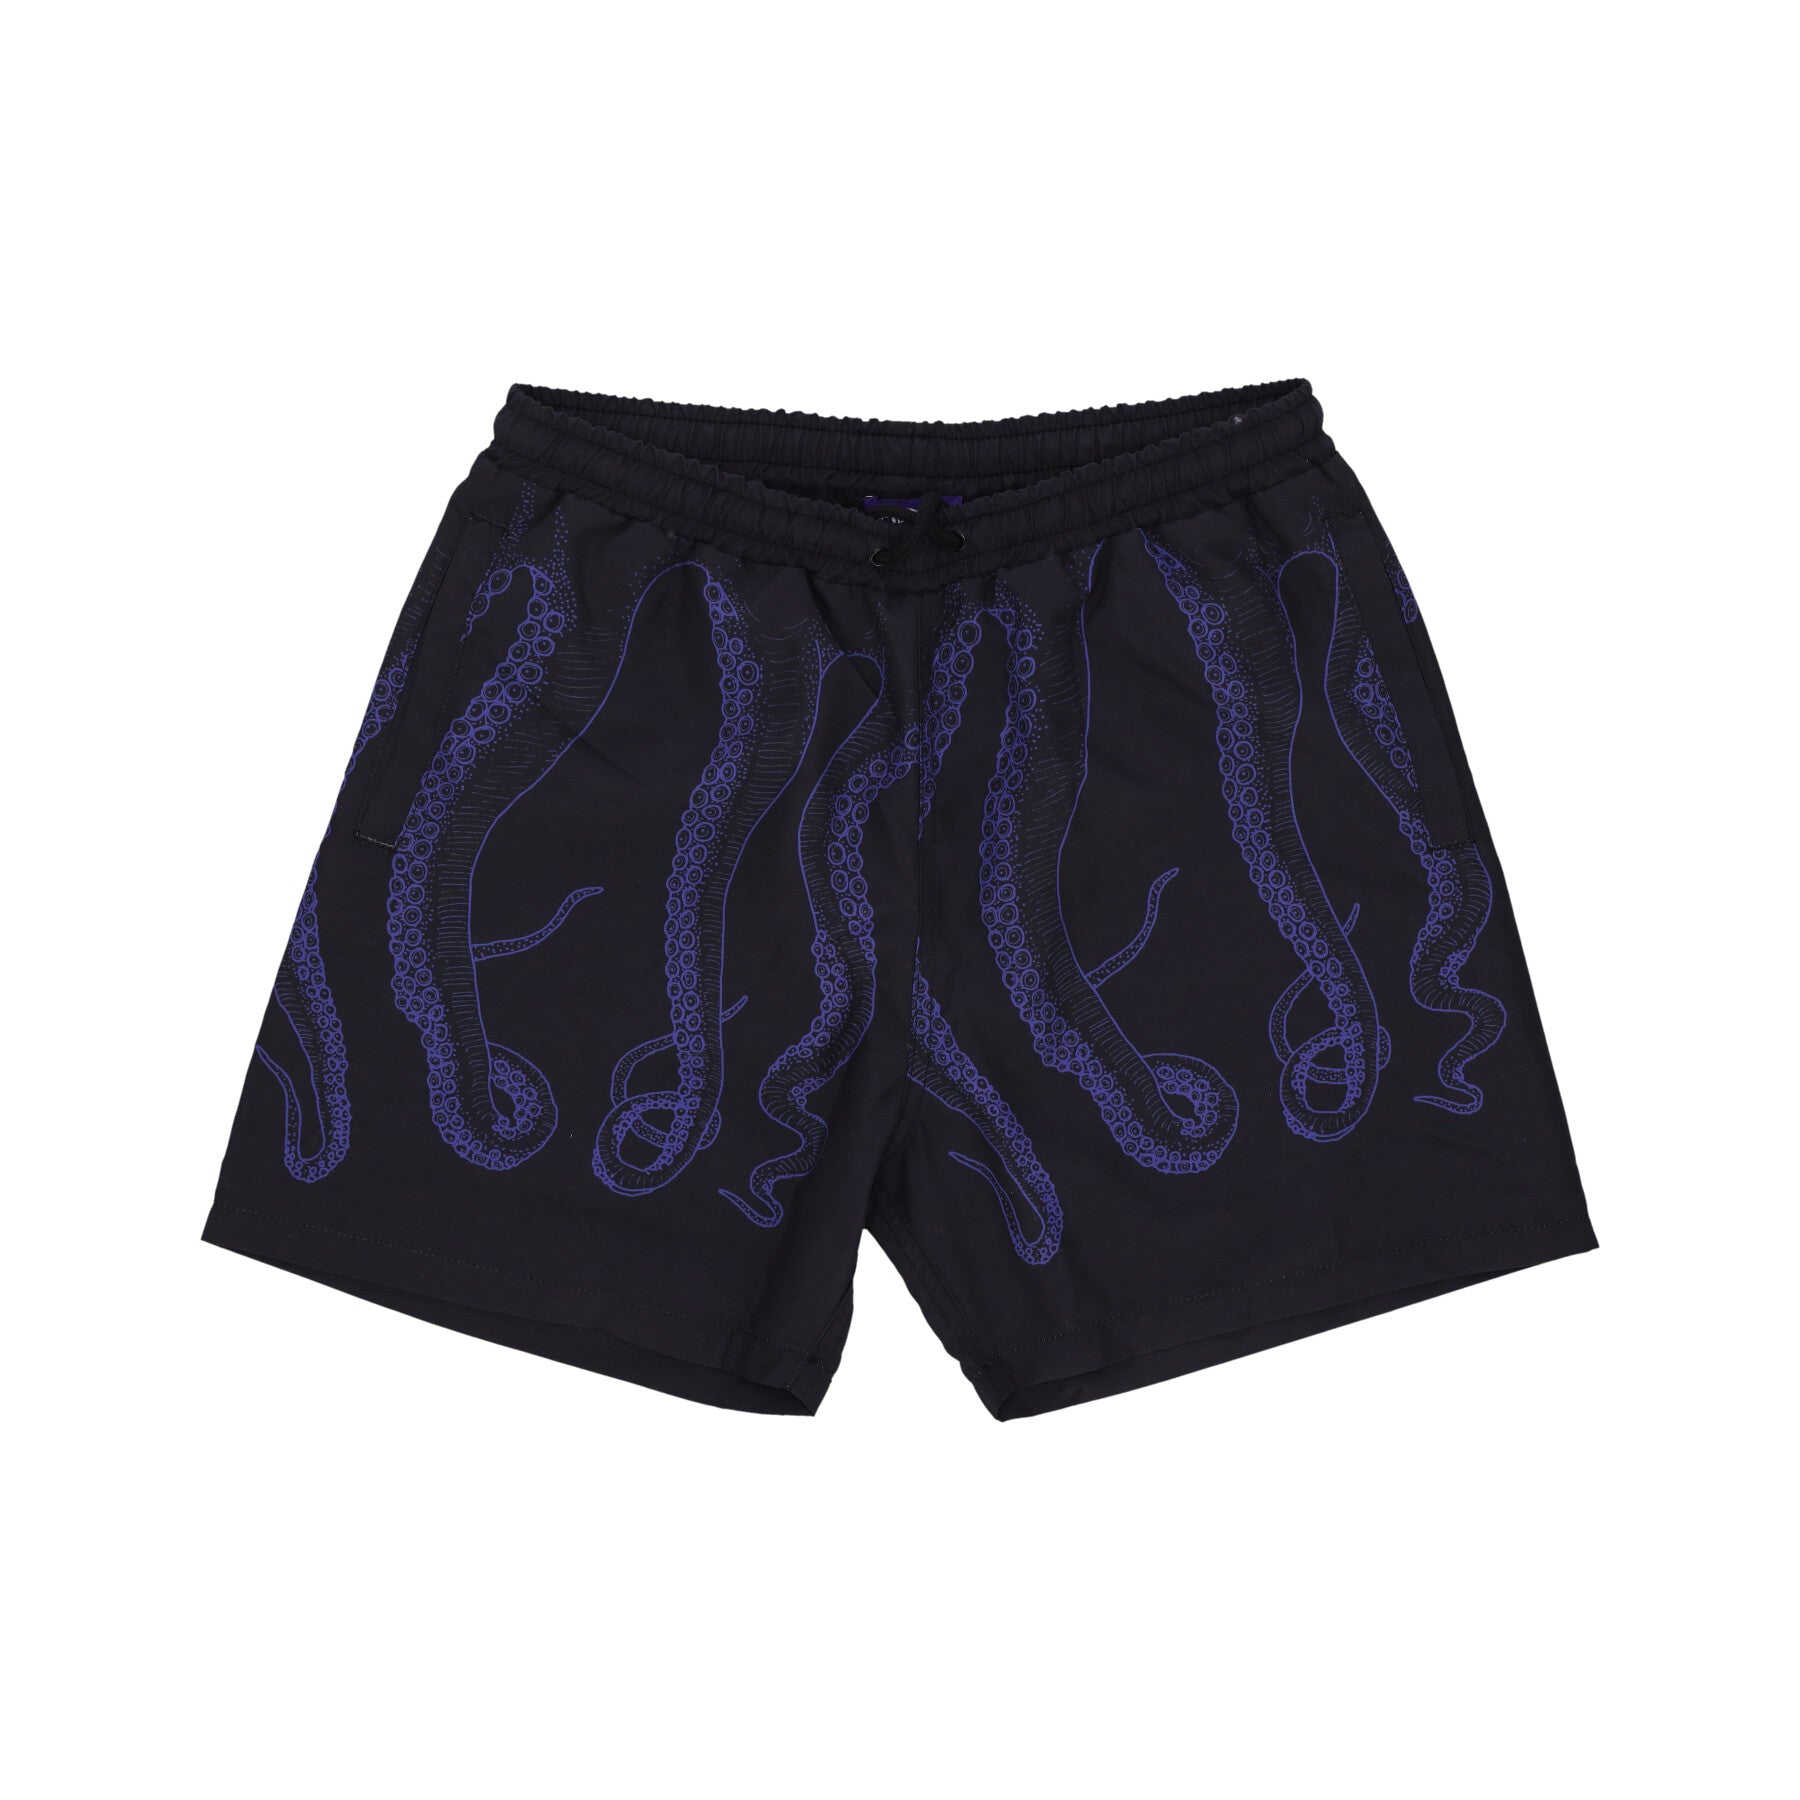 Outline Swimtrunk Men's Swim Shorts Purple/black